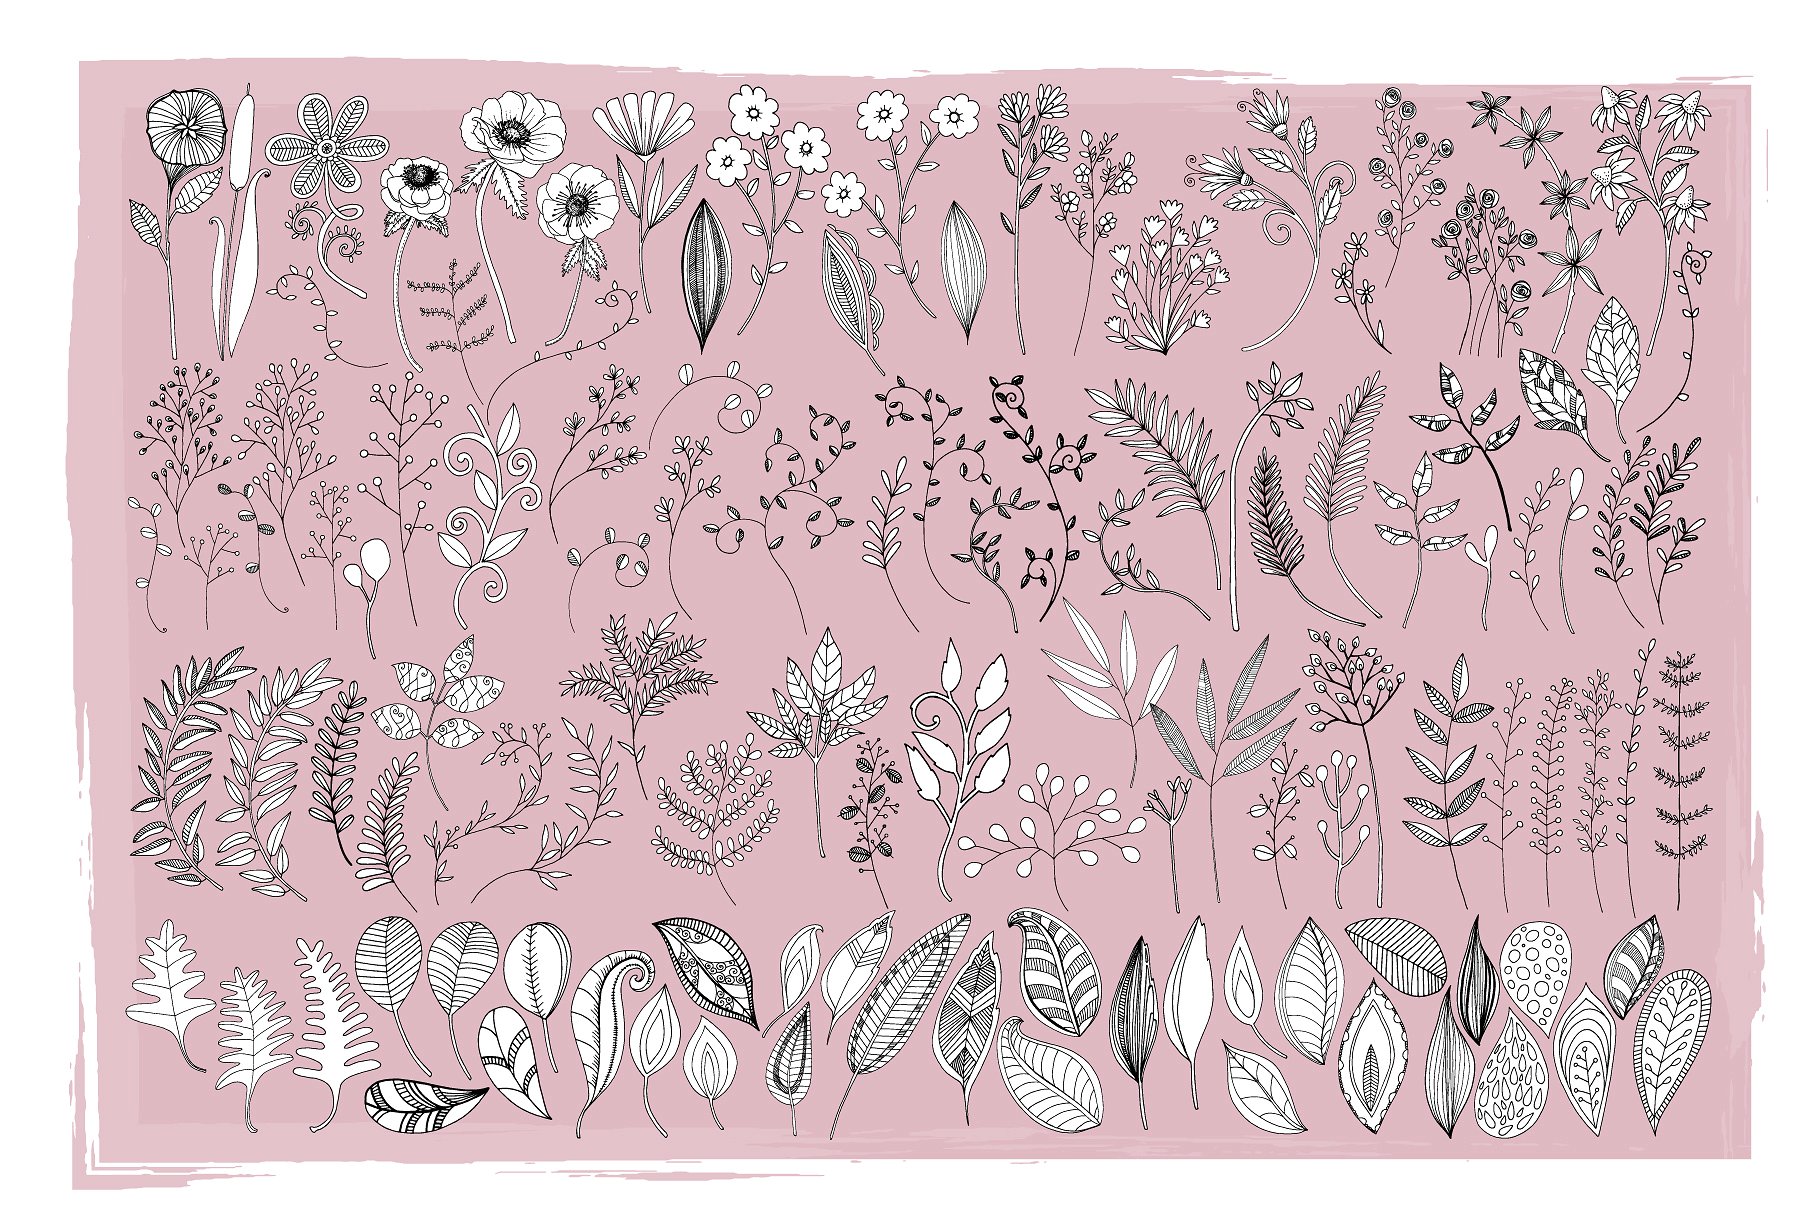 花卉艺术线条及花环素材 Flower Line Art & Floral Wreaths插图(10)